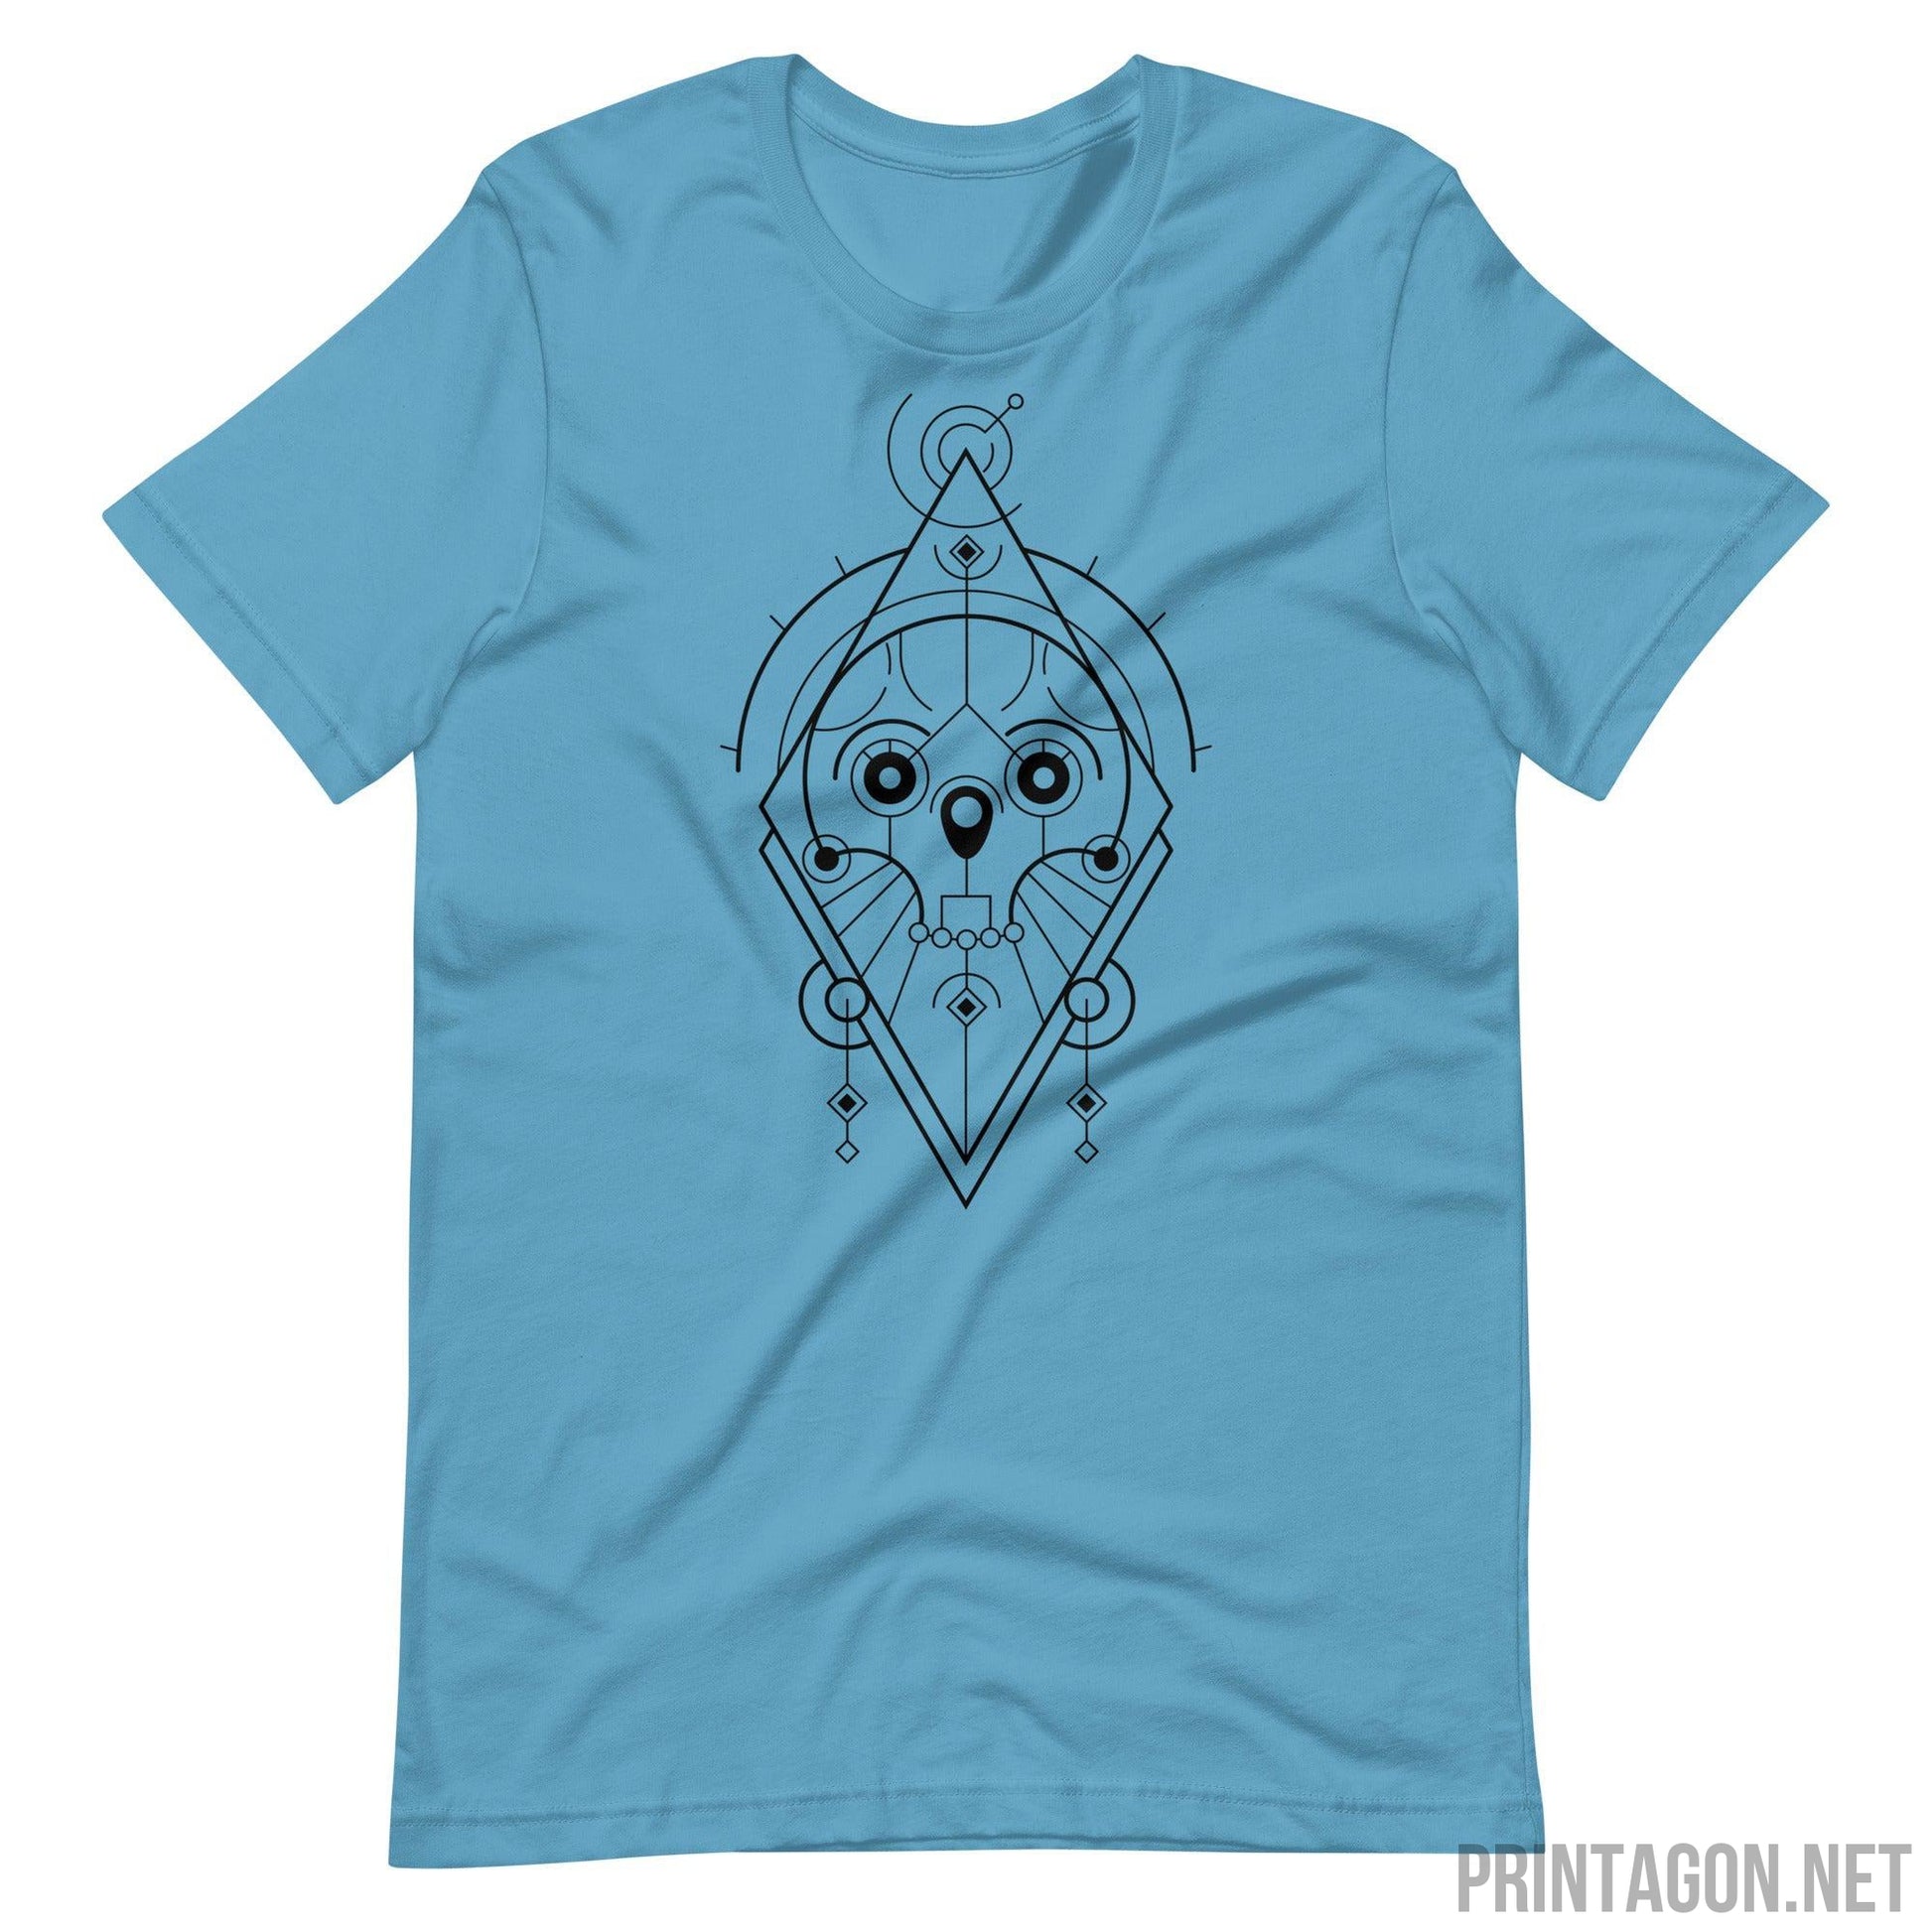 Sacred Geometric Skull - Unisex T-shirt - Ocean Blue / S Printagon